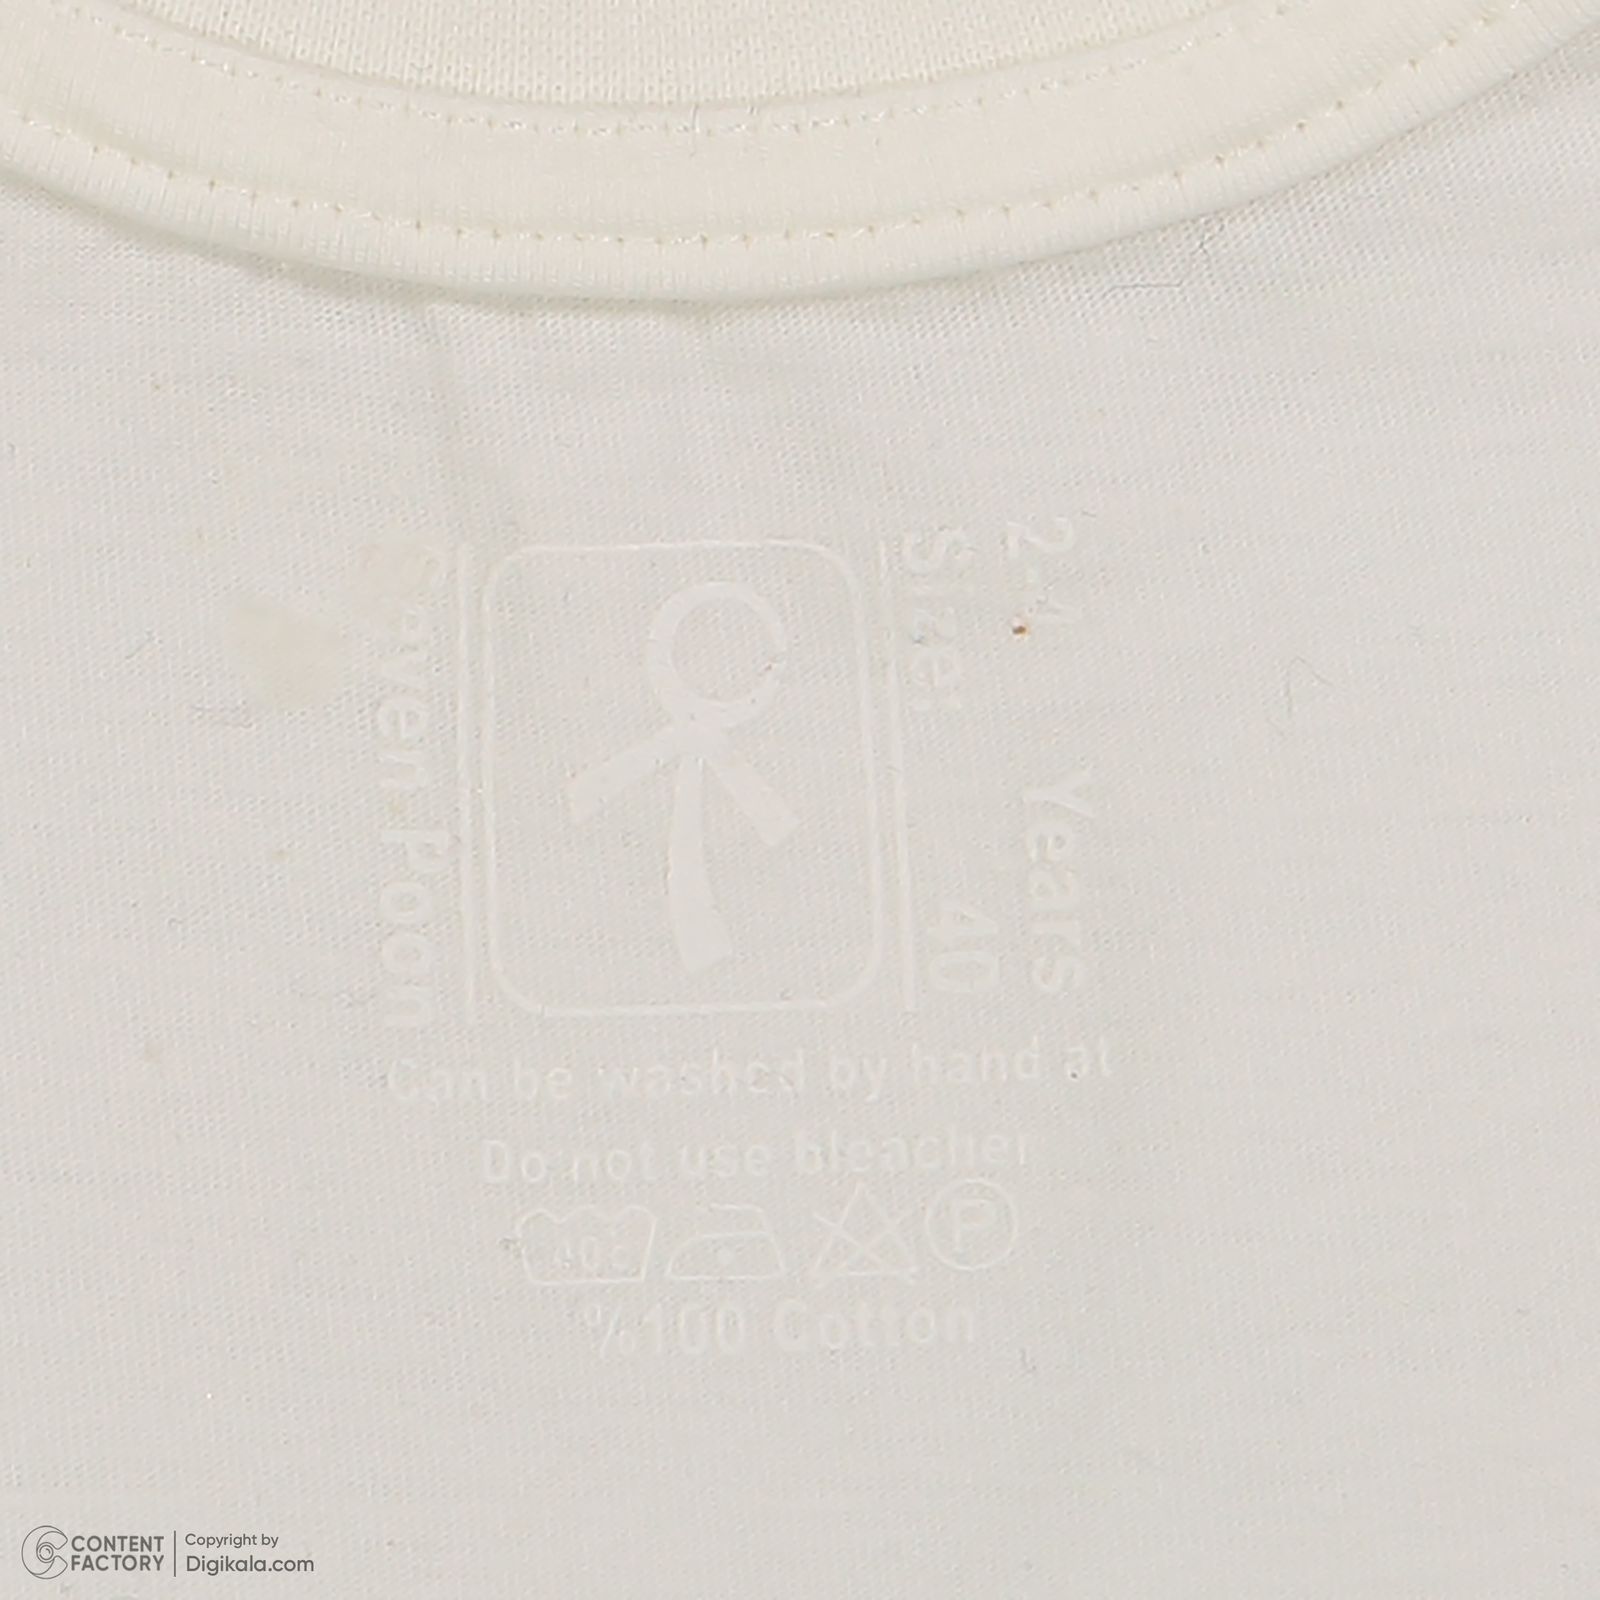 ست تی شرت و شلوارک پسرانه سون پون مدل 13911093 رنگ سفید -  - 6